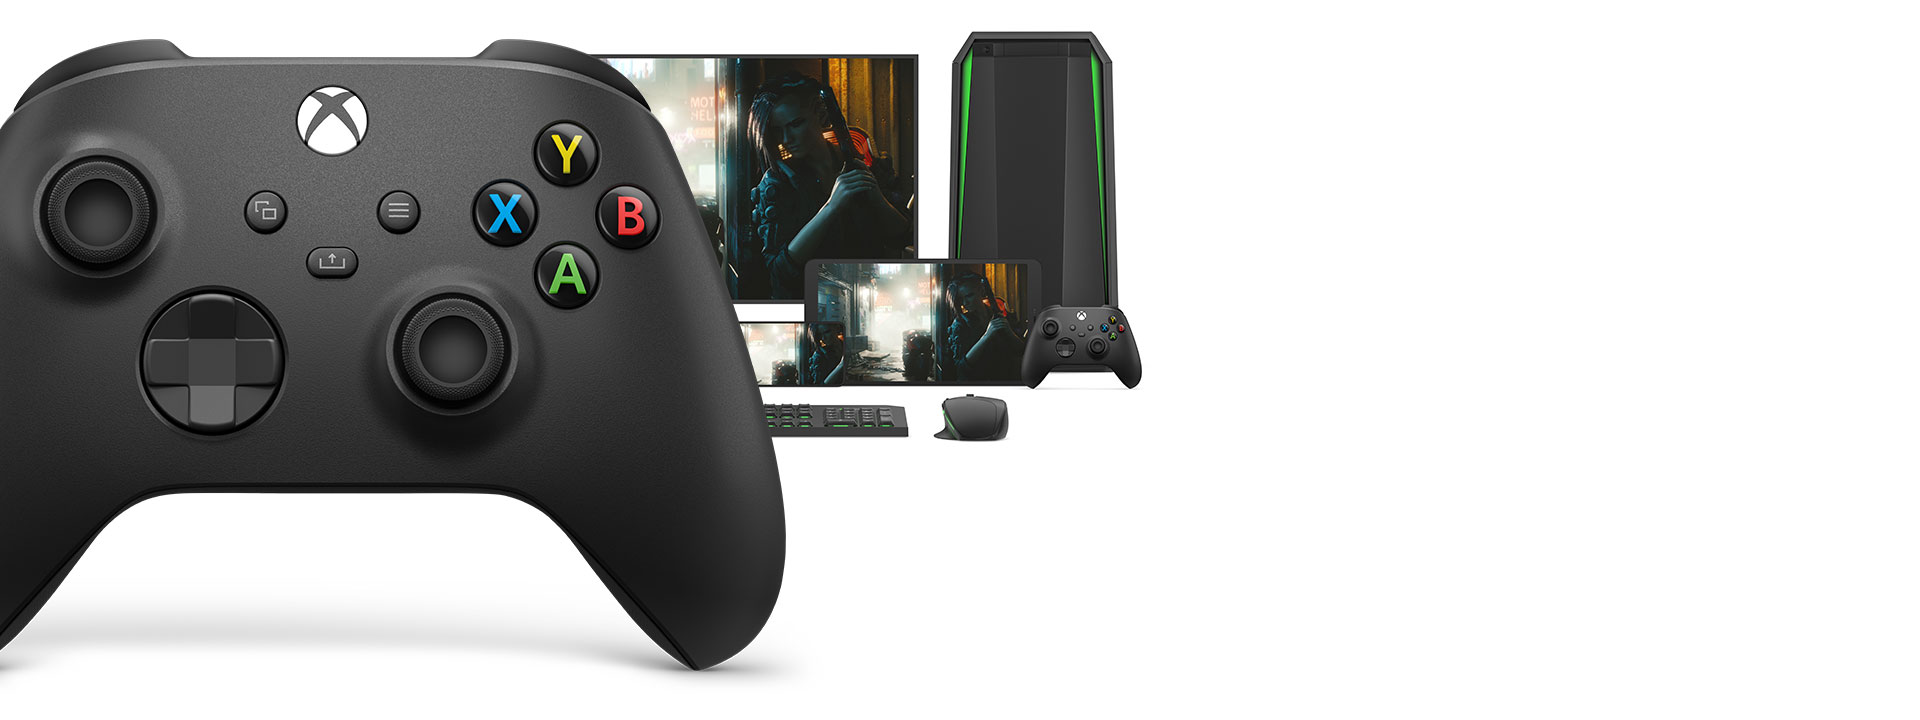 Tay cầm chơi game Xbox Series X Controller - Pulse Red có thể sử dụng với nhiều thiết bị